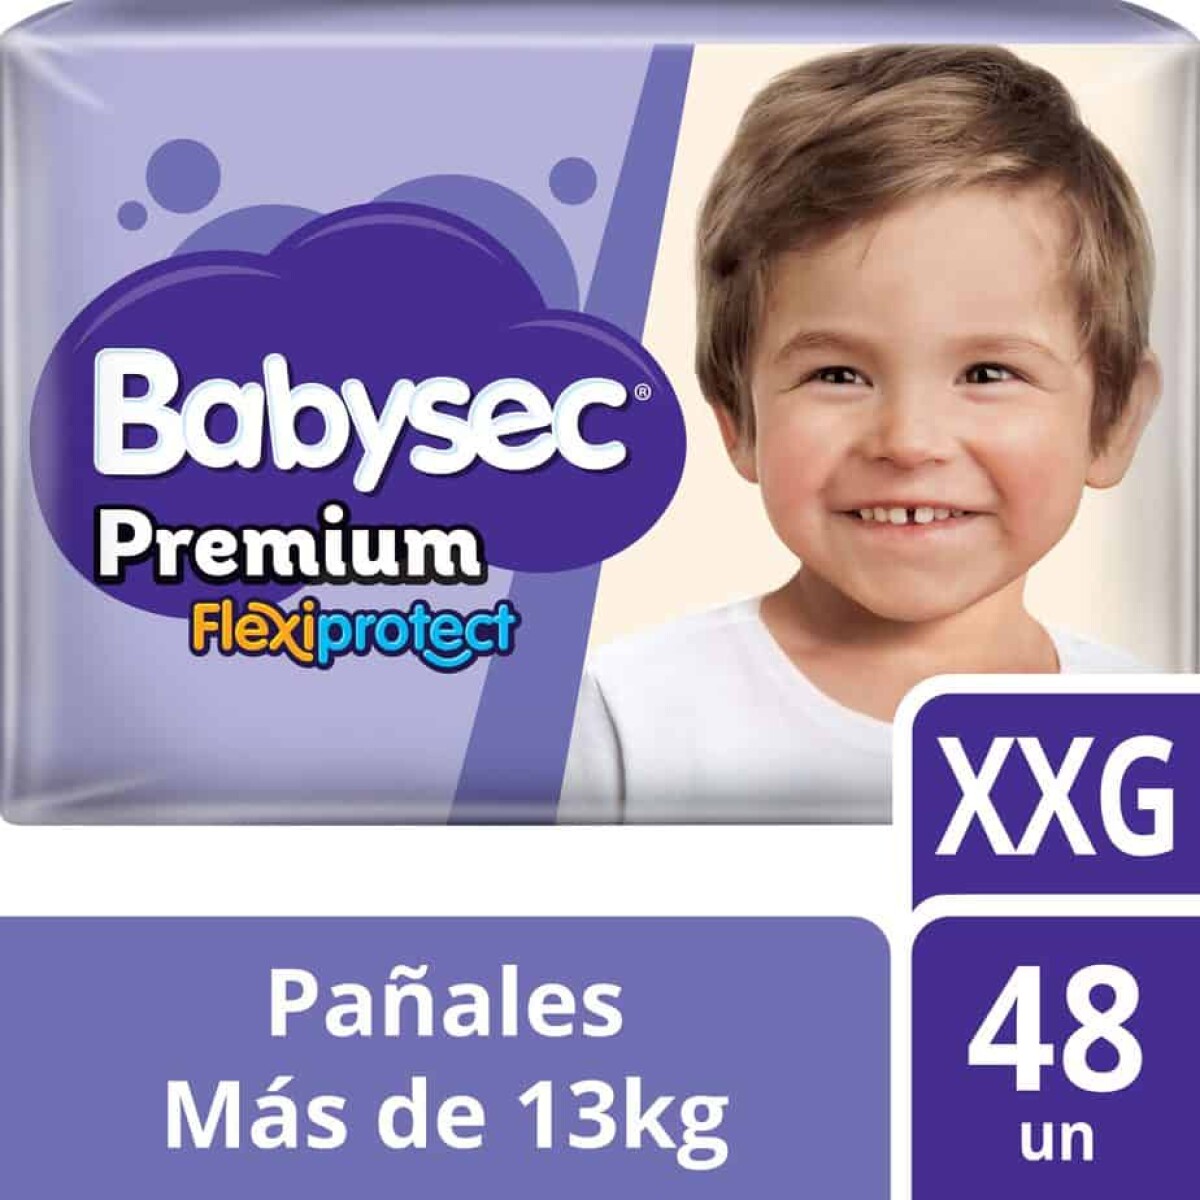 Pañales Babysec Premium Xxg X 48 